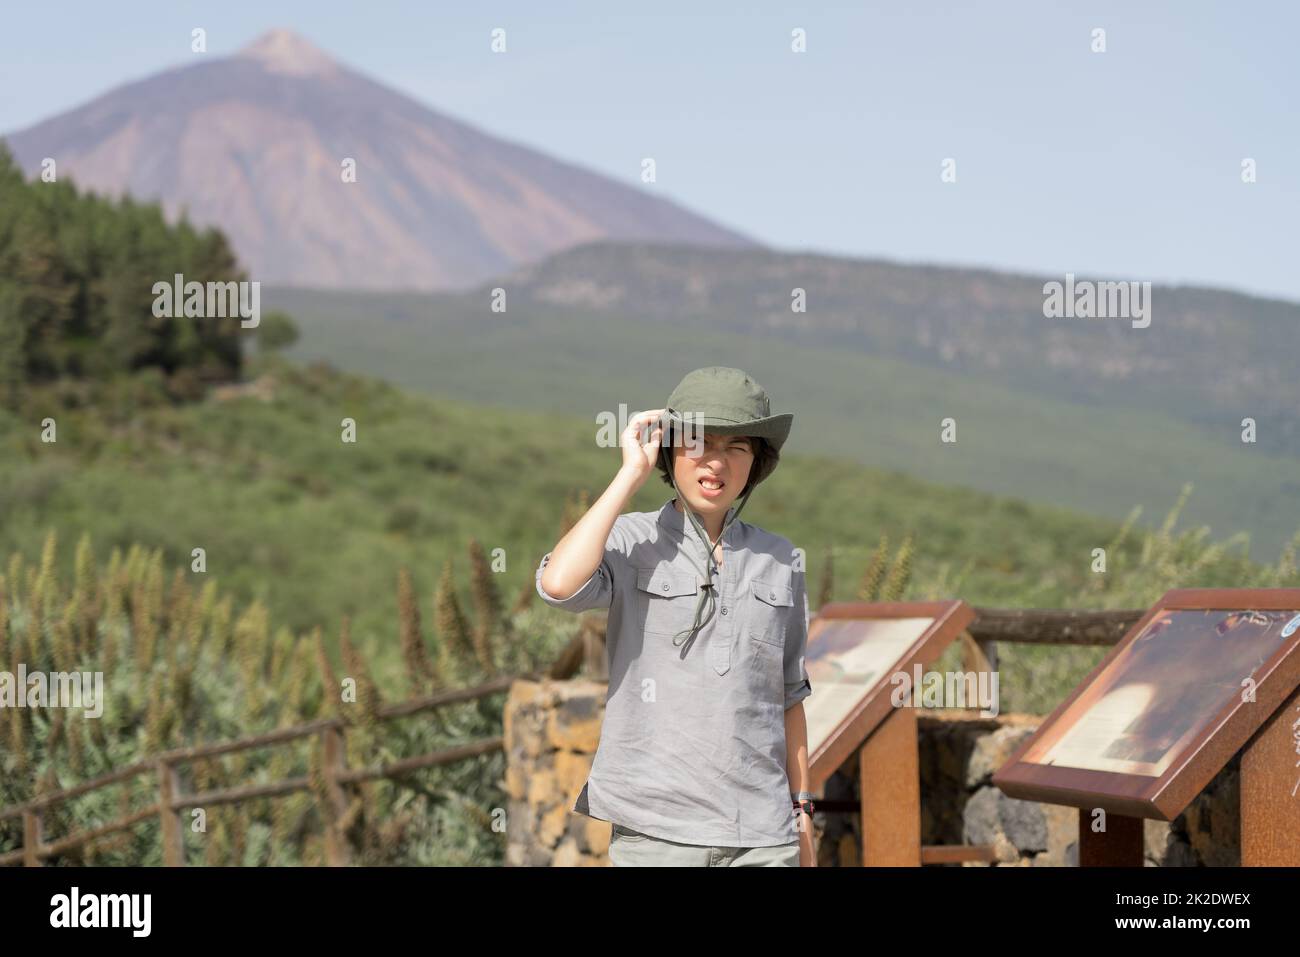 Ein Teenager steht auf einer Aussichtsplattform hoch in den Bergen. Im Hintergrund ist der Vulkan Teide zu sehen. Teneriffa. Kanarische Inseln. Spanien. Stockfoto